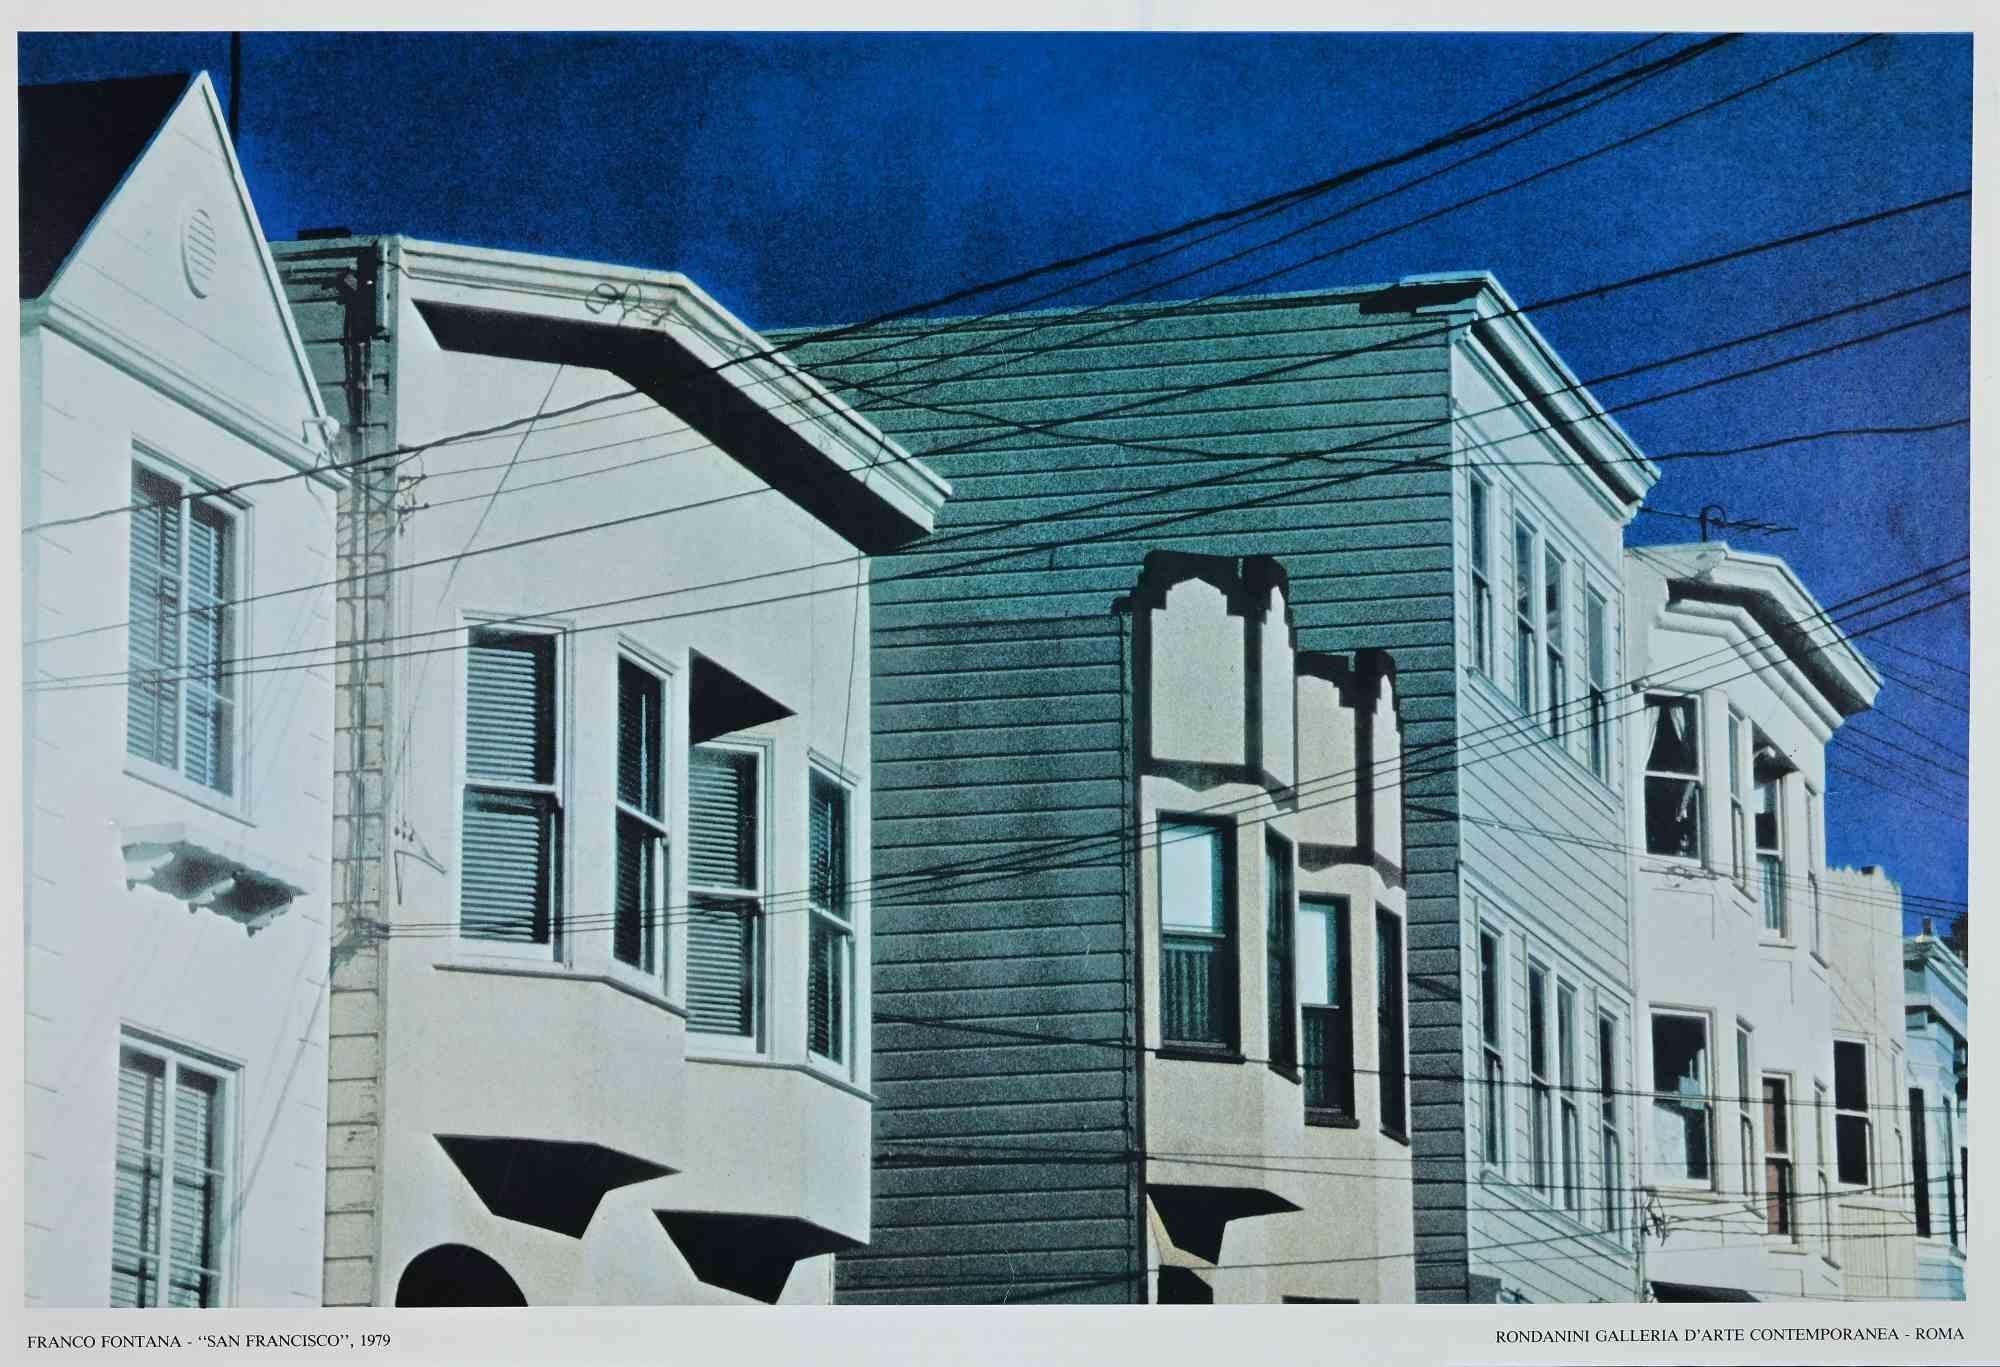 San Francisco - Affiche vintage offset d'après Franco Fontana - 1979